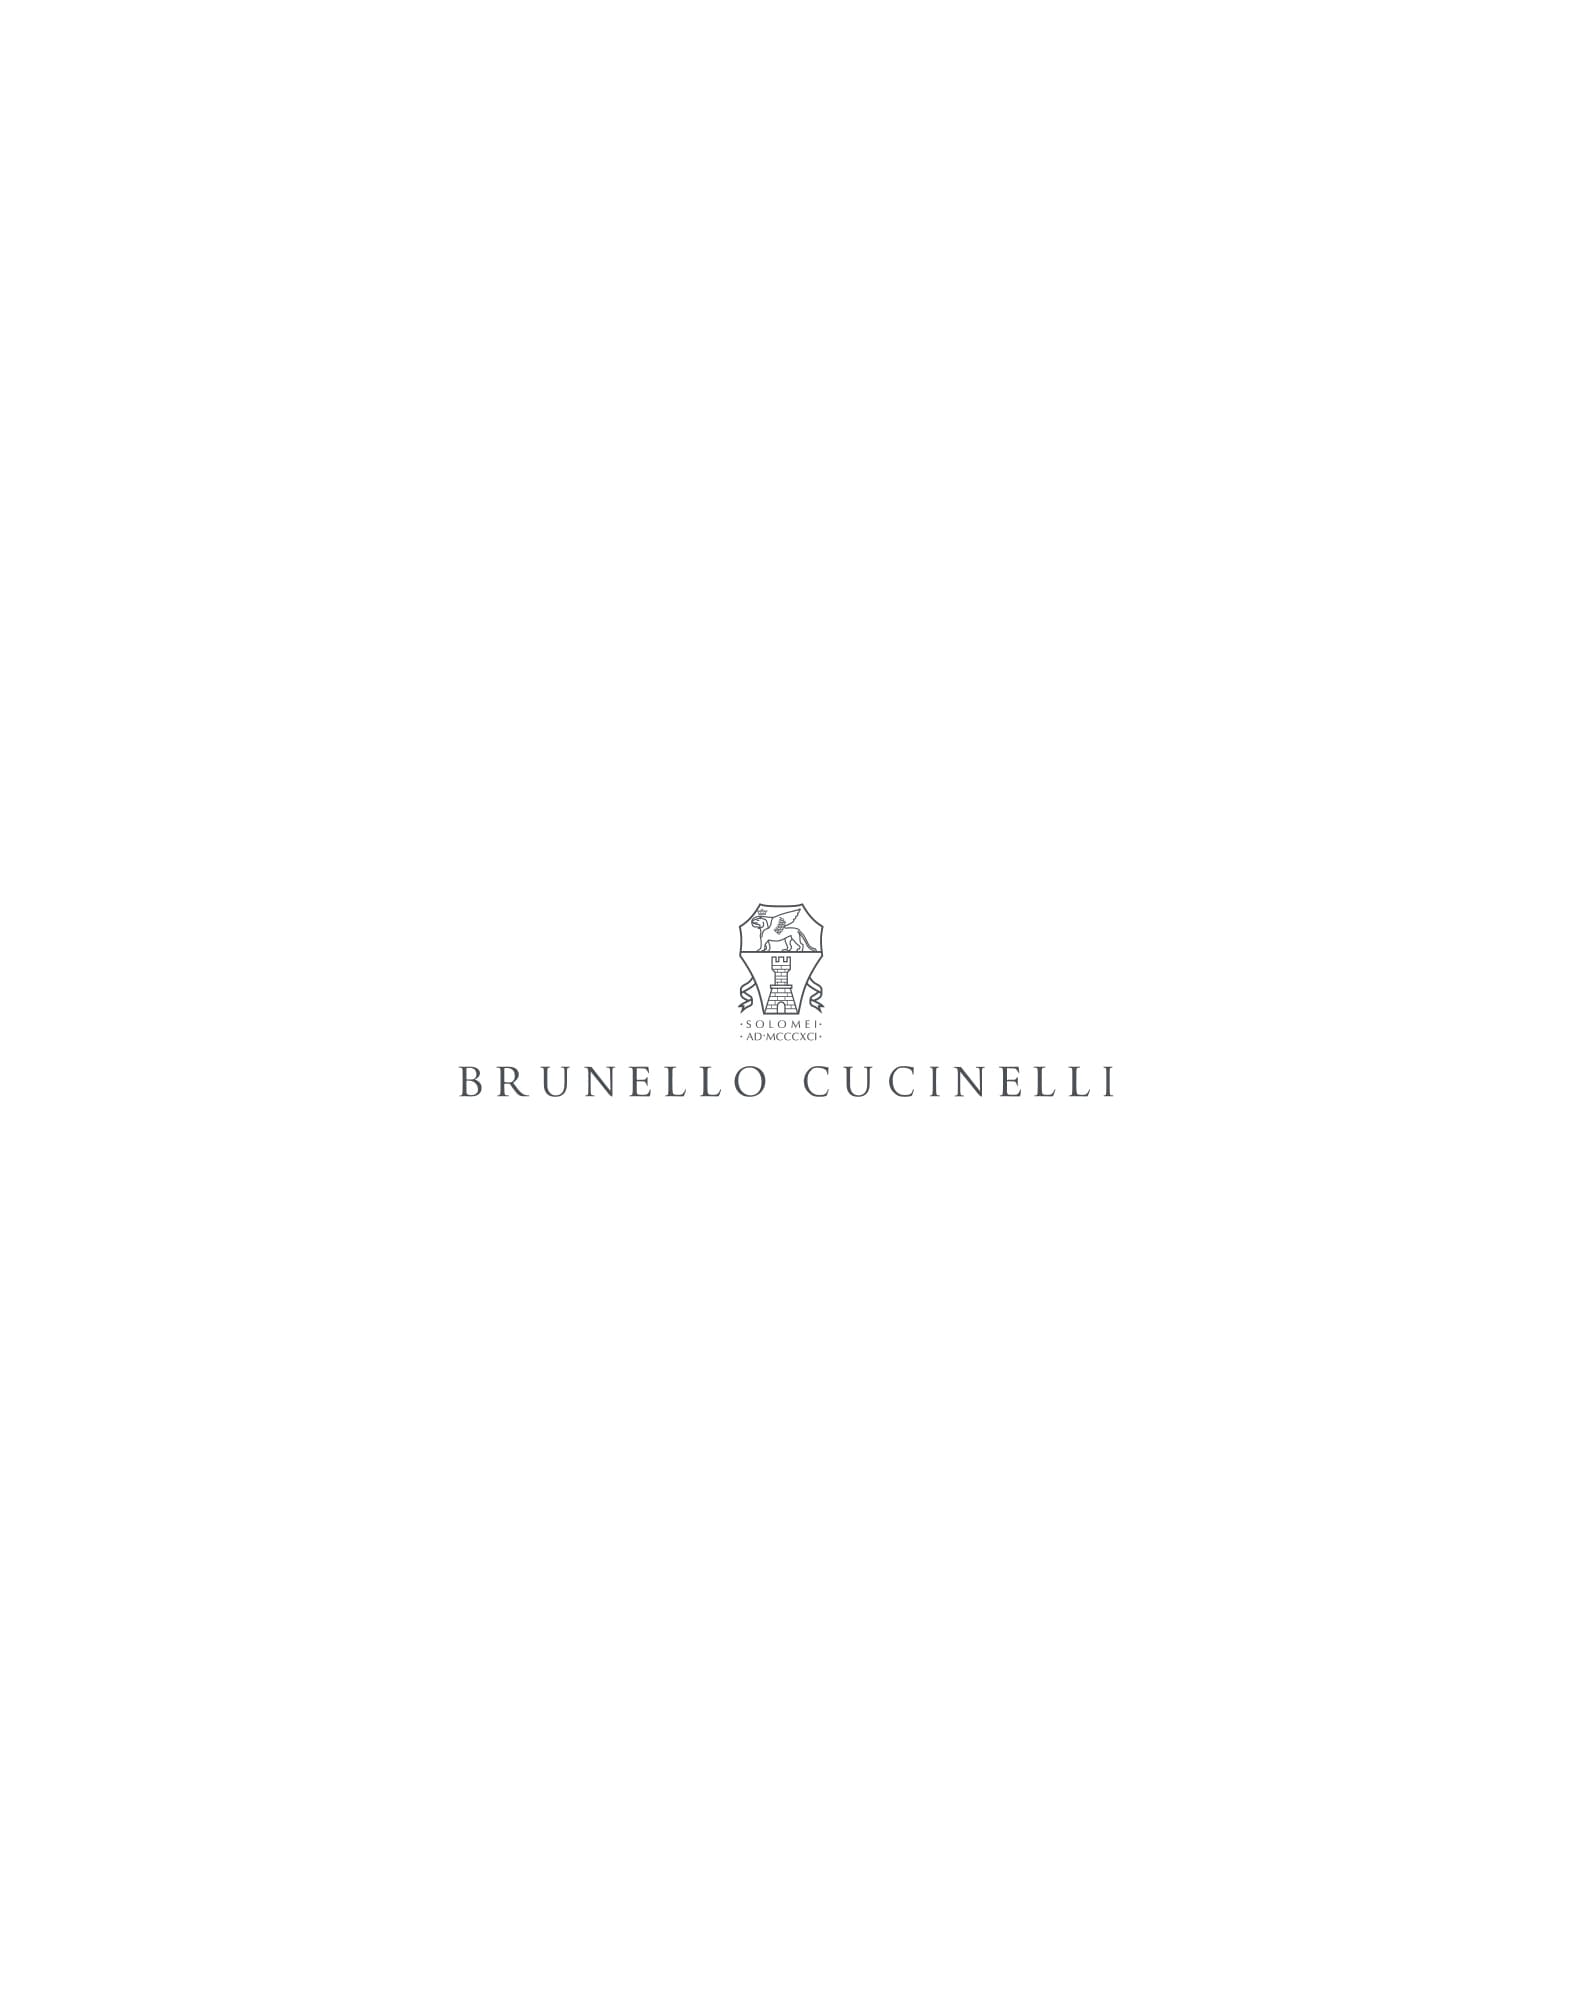 Suede boots Chestnut Man - Brunello Cucinelli